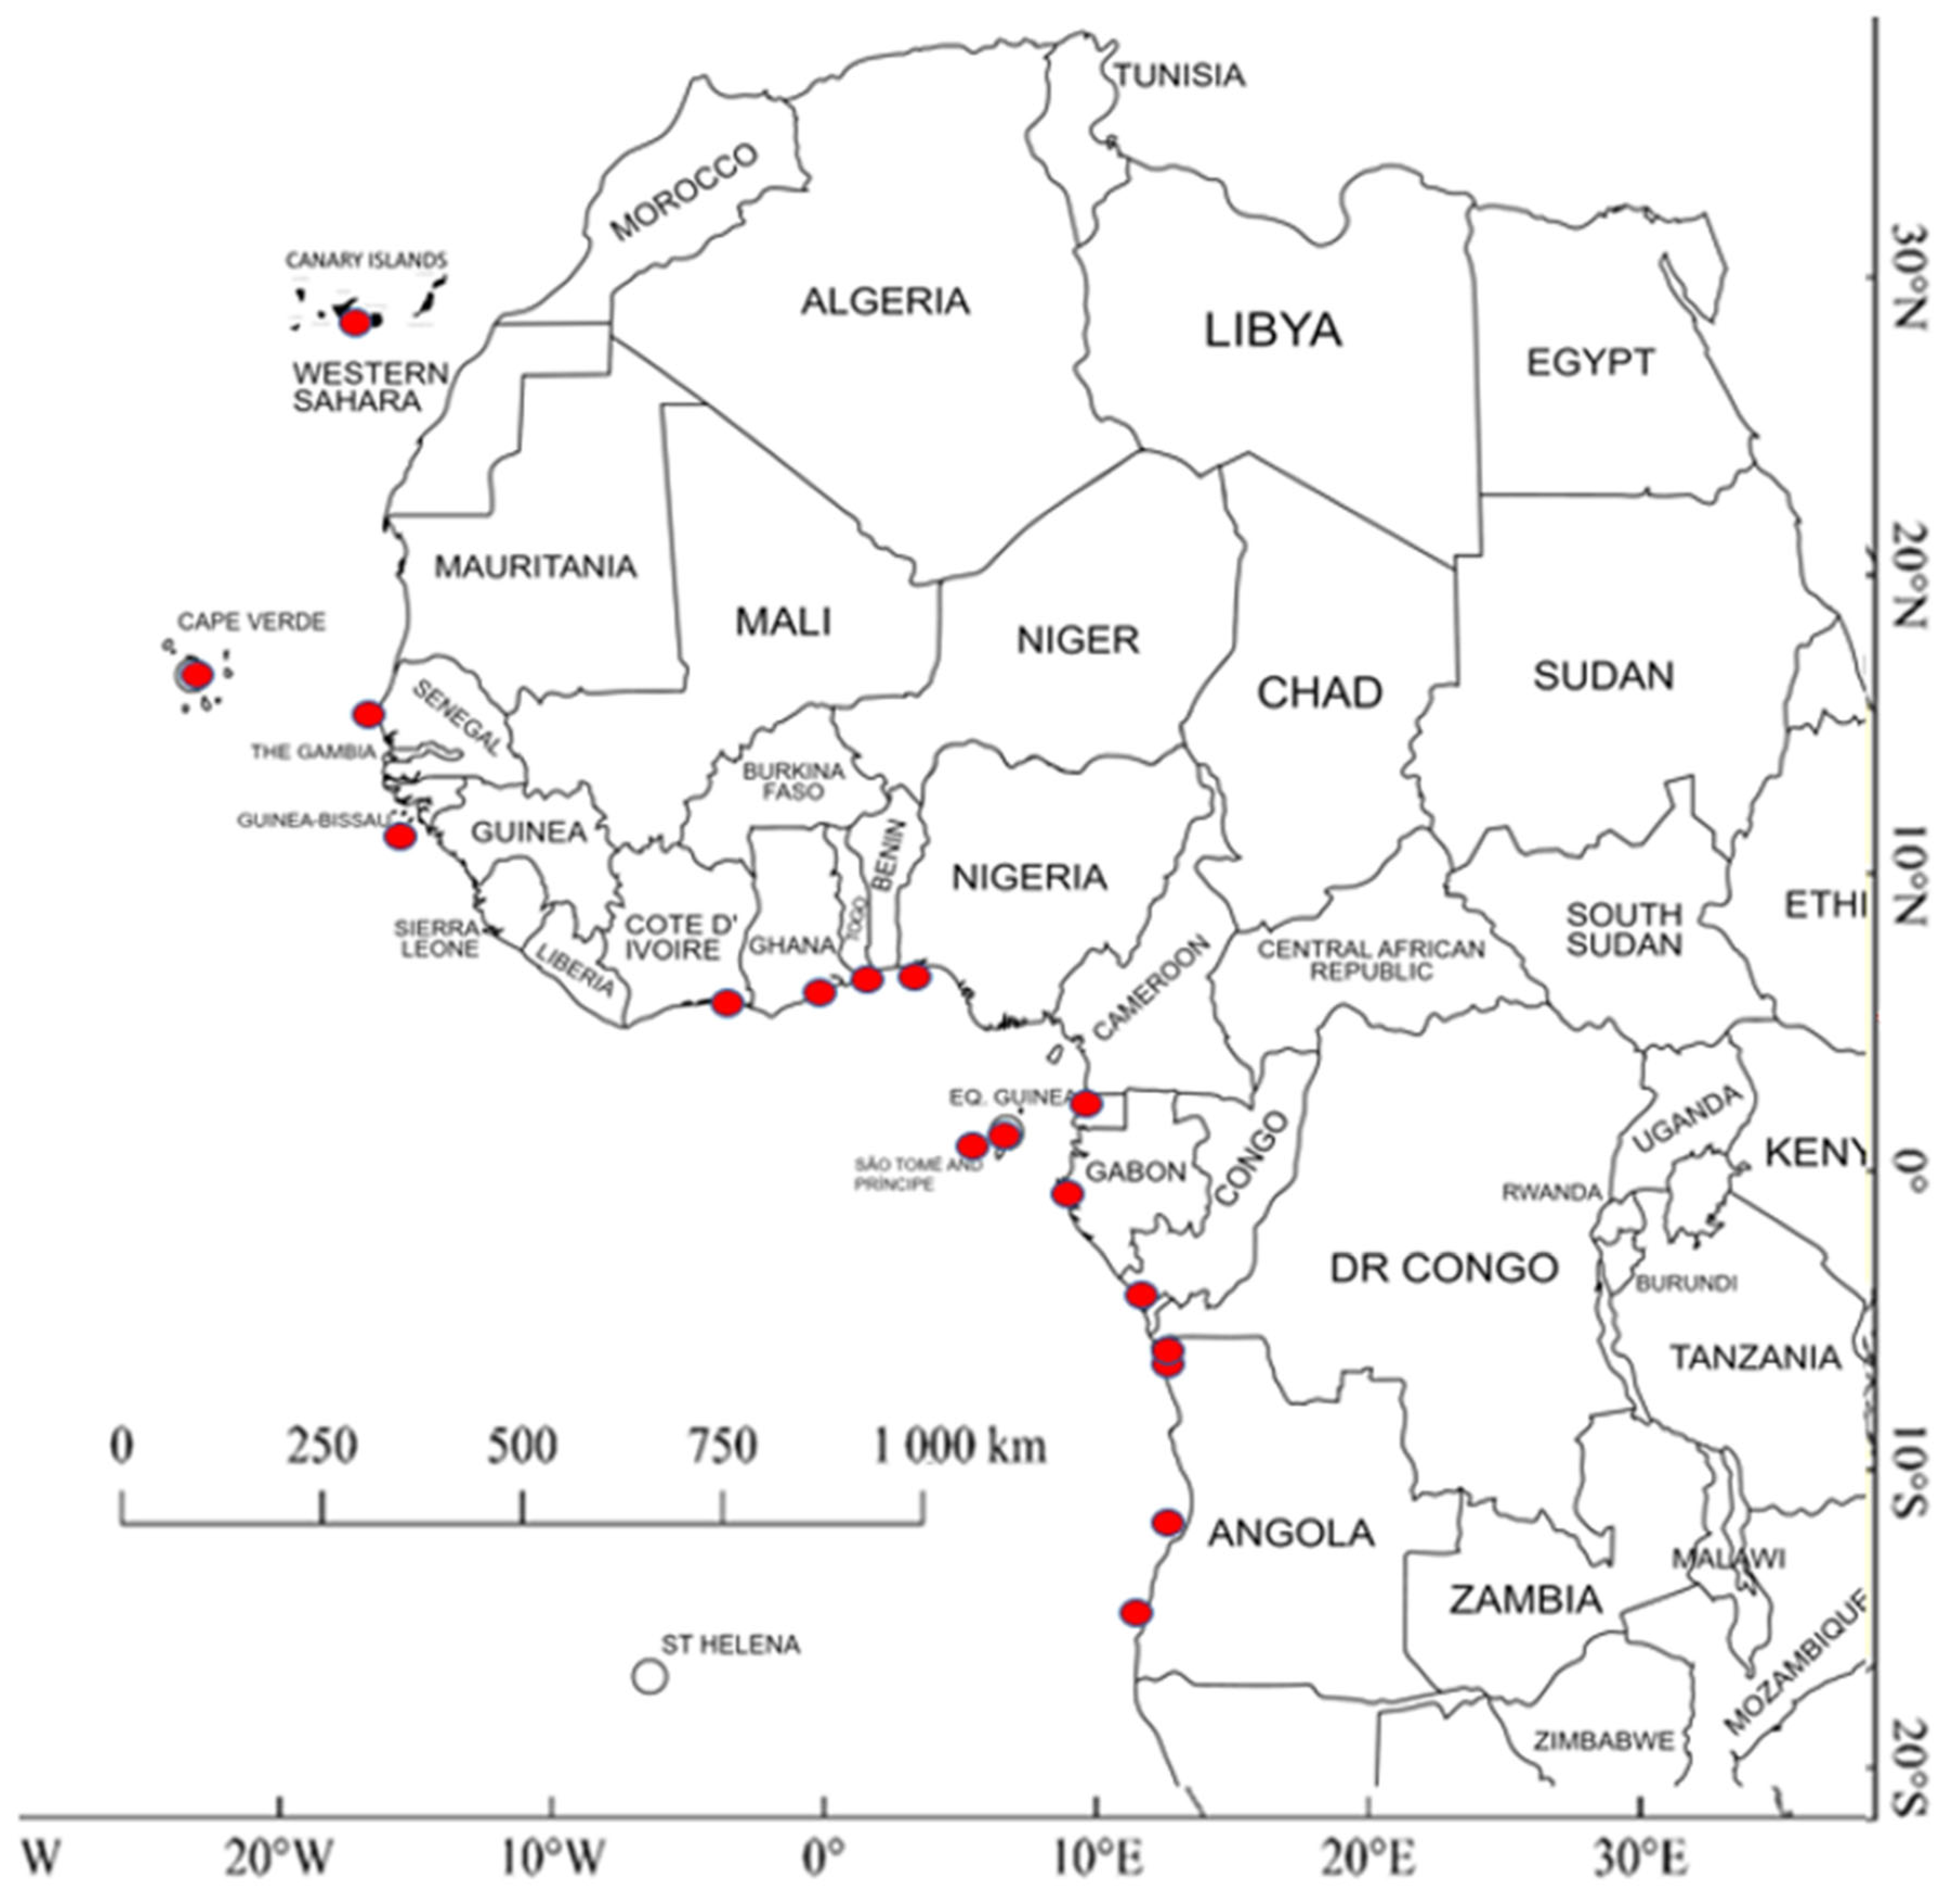 File:Locator map of Azores in EU.svg - Wikipedia